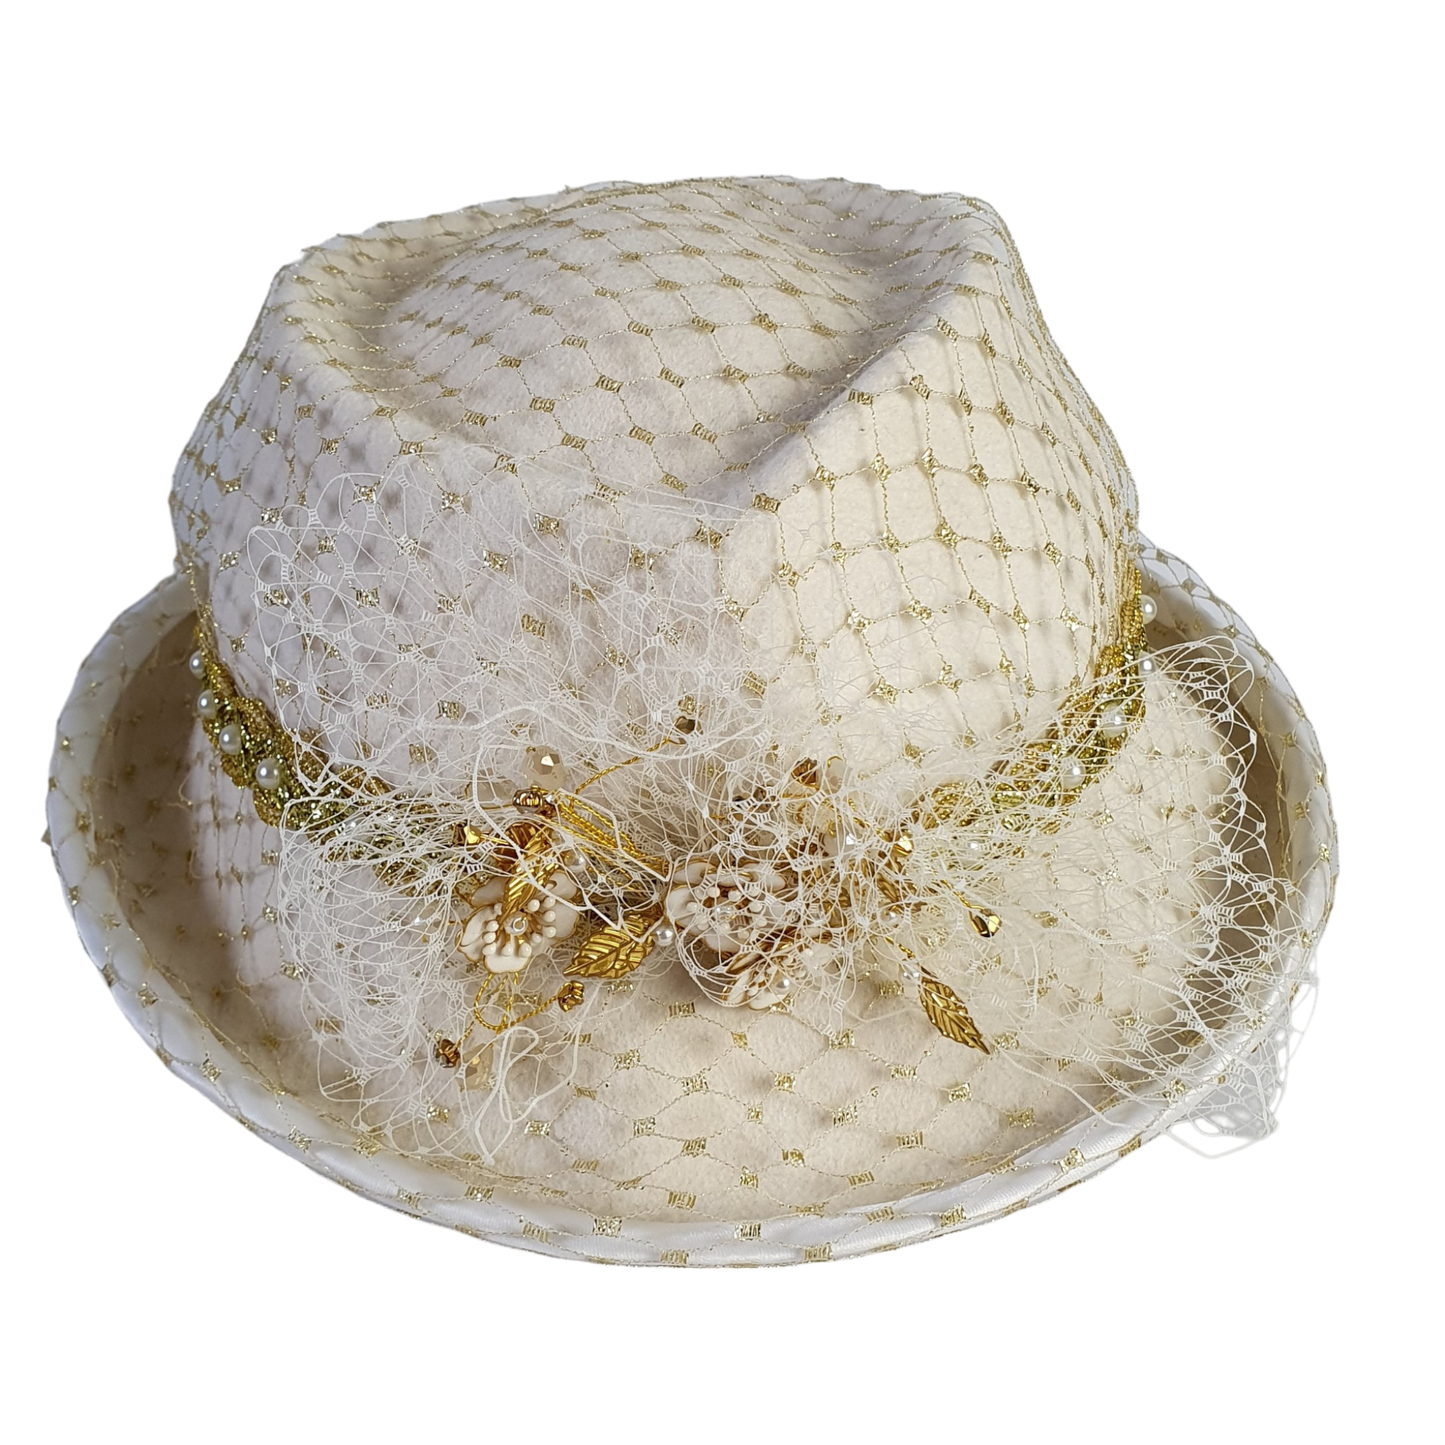 Sombrero de mujer Fedora de fieltro blanco crudo con velo, elegante sombrero de novia hecho a mano, para bodas y otros eventos especiales.